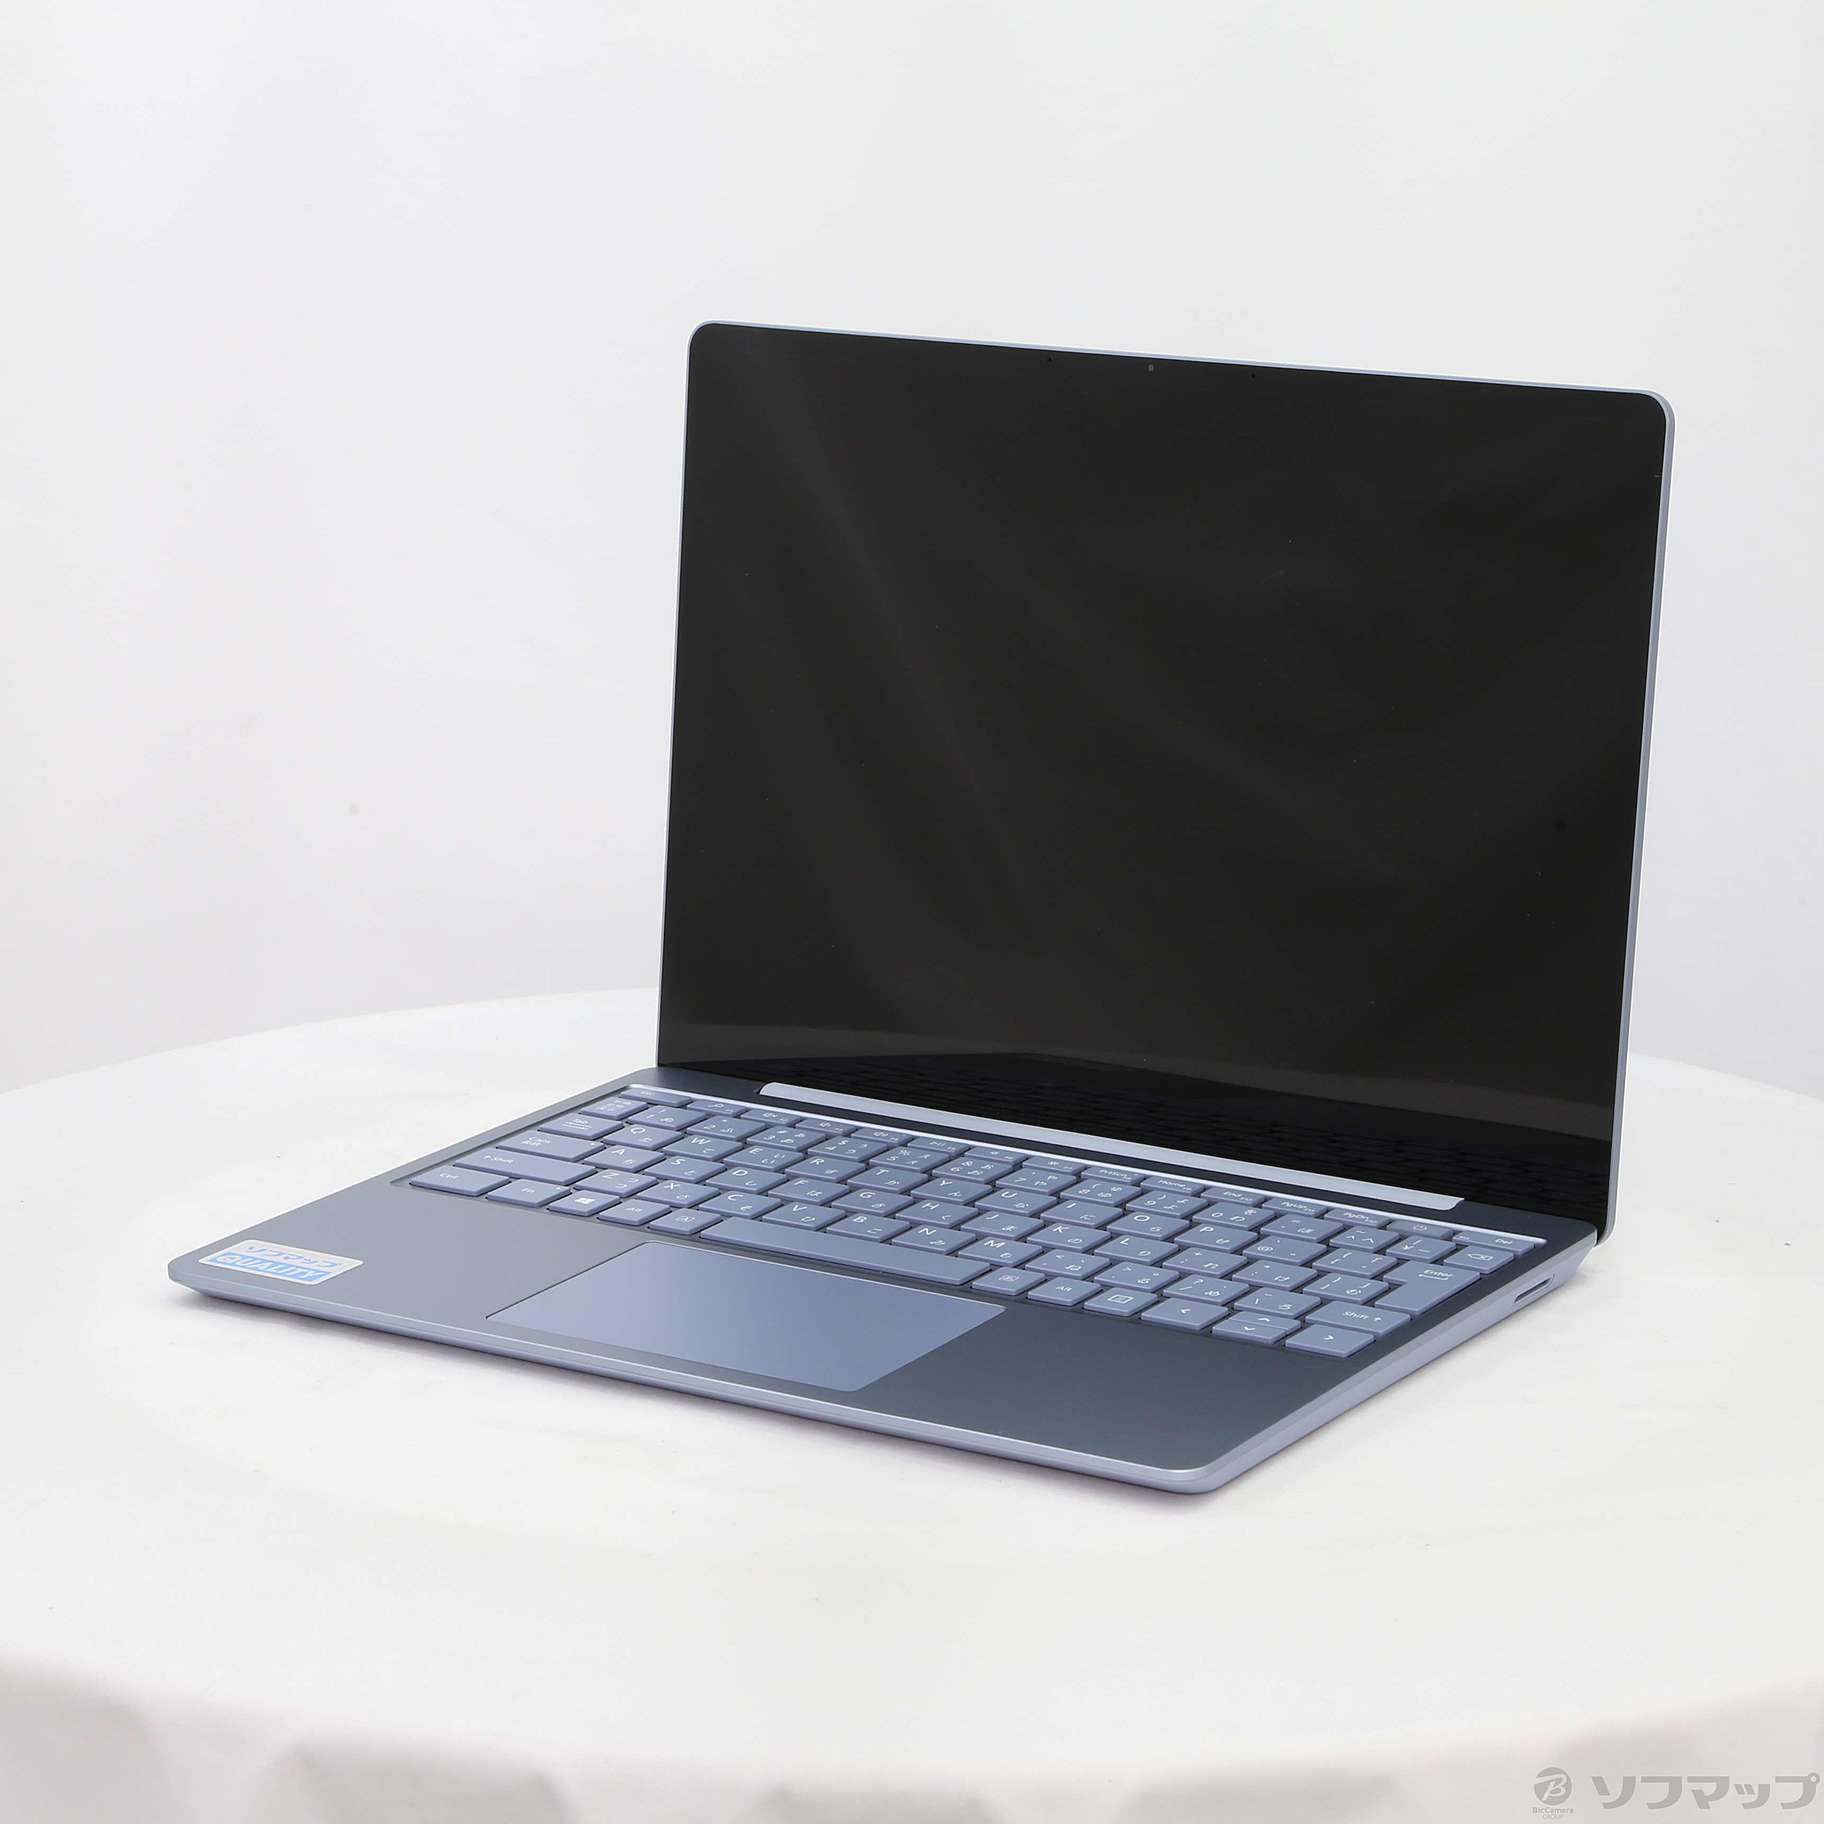 新品未開封 Surface Laptop Go i5 THH-00034 - rehda.com